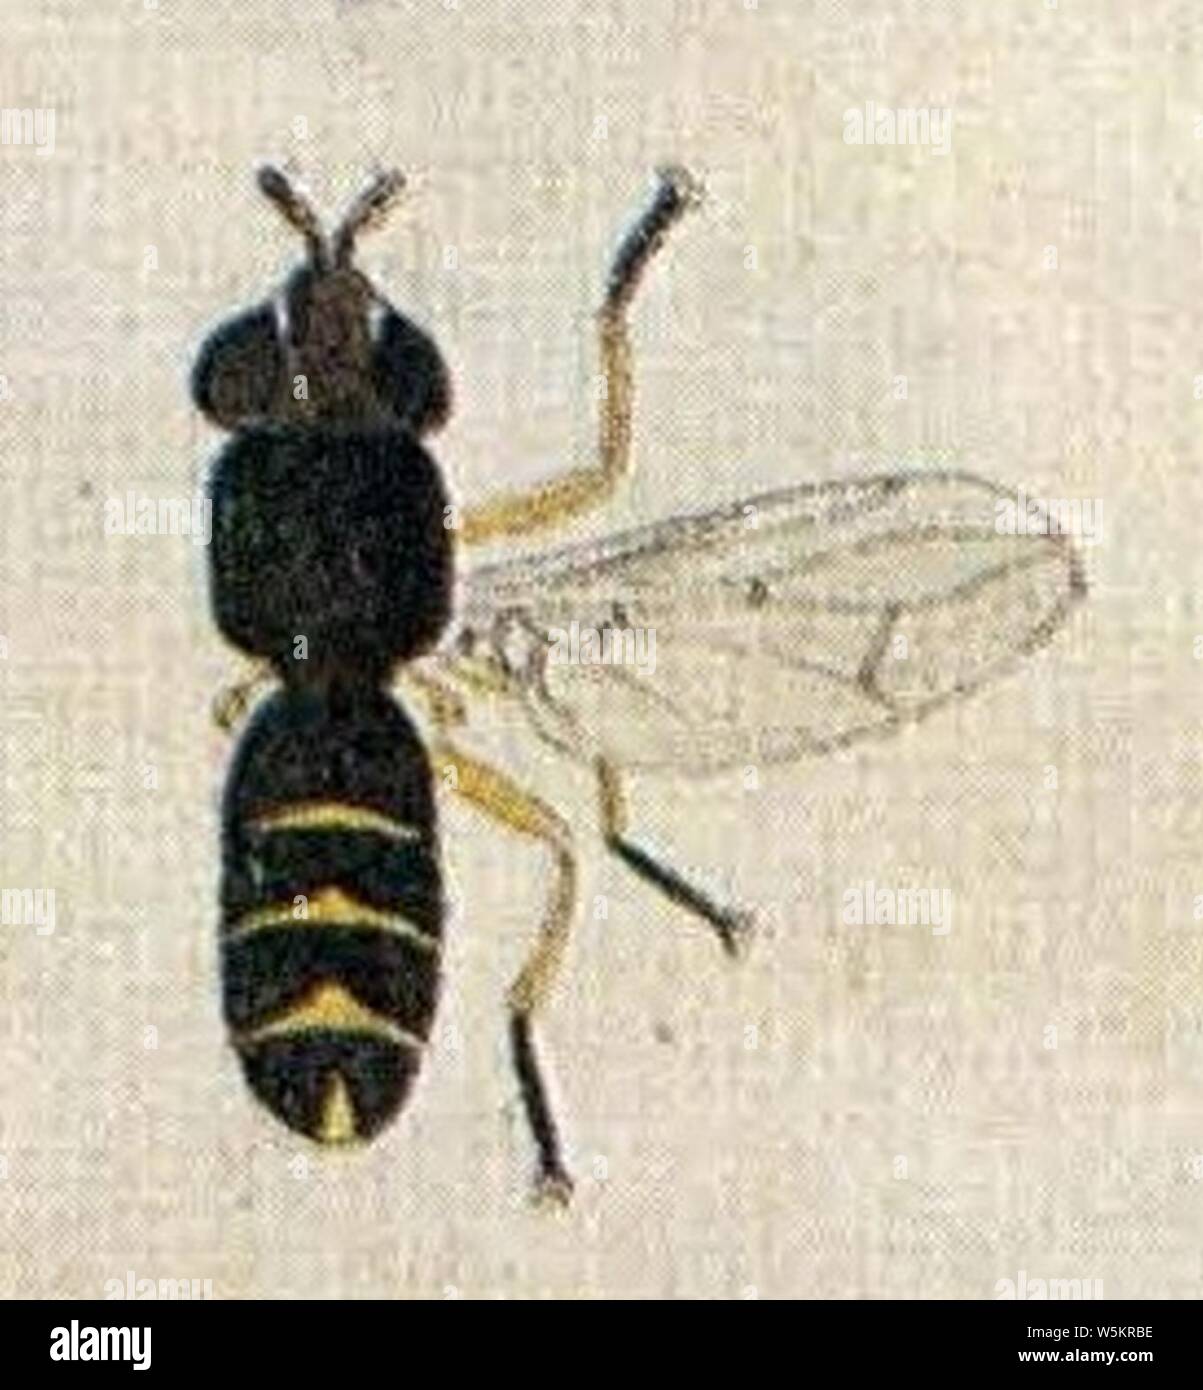 Dalmannia marginata (EuropäischenZweiflügeligen Meigen 1790). Stock Photo